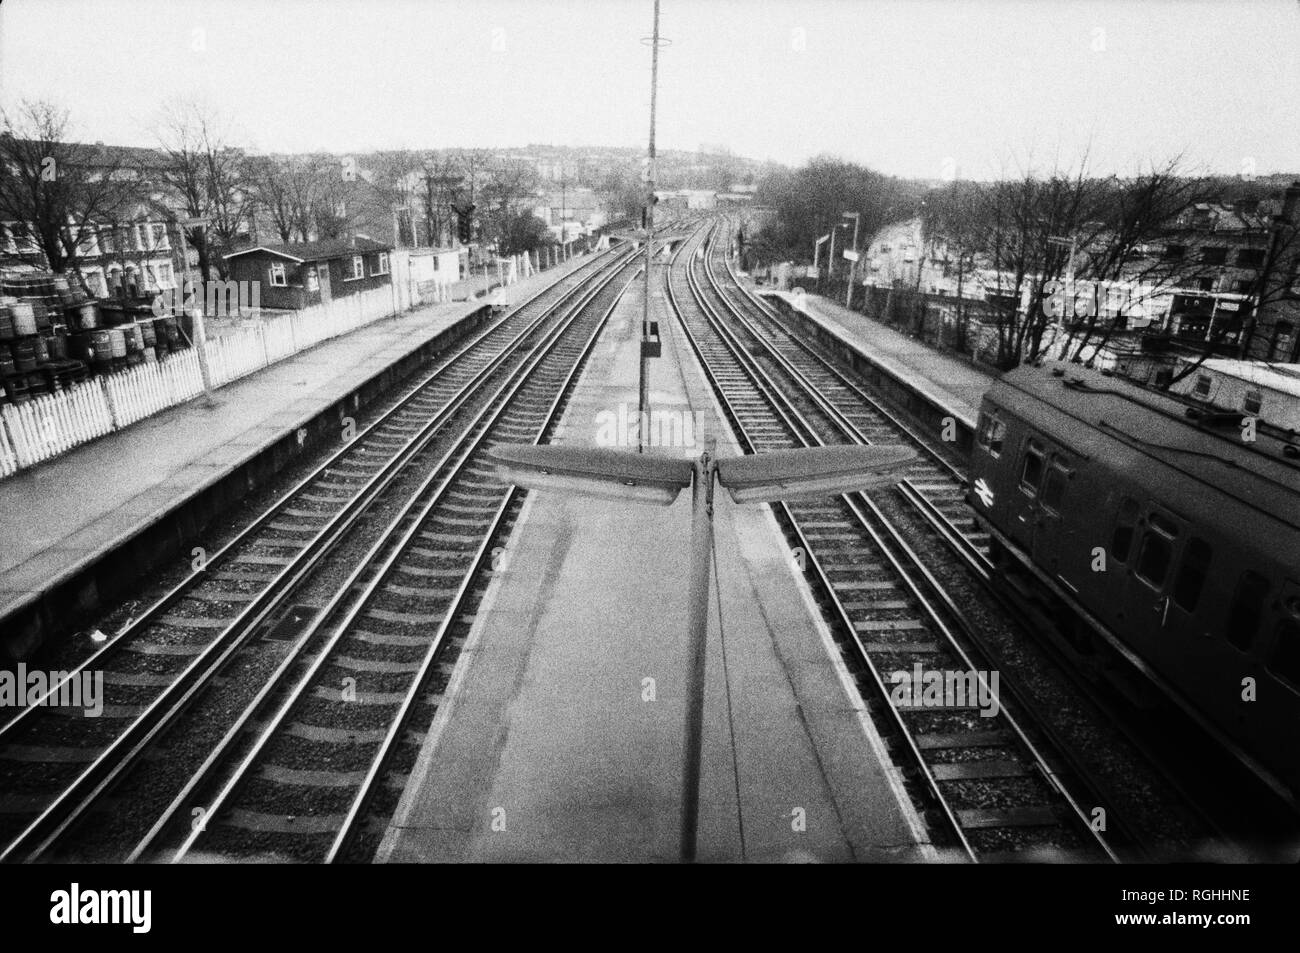 Archivio immagine monocromatica della piattaforma di una stazione ferroviaria di Londra sud con slam porta treno che passa attraverso, 1979, Londra, Inghilterra Foto Stock